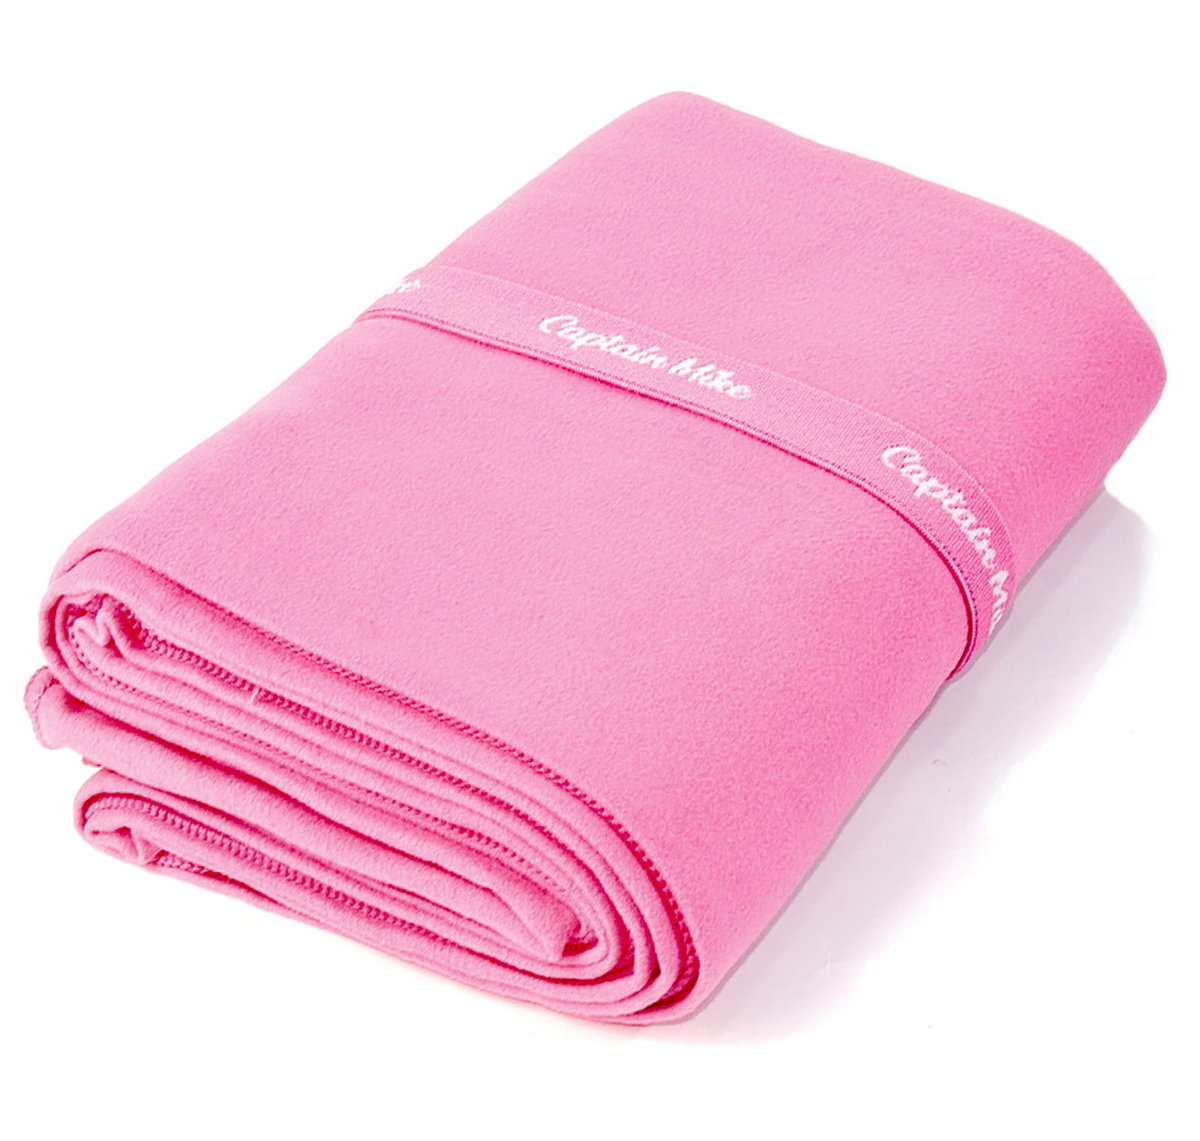 Zdjęcia - Ręcznik  z mikrofibry szybkoschnący plażowy różowy 80x130